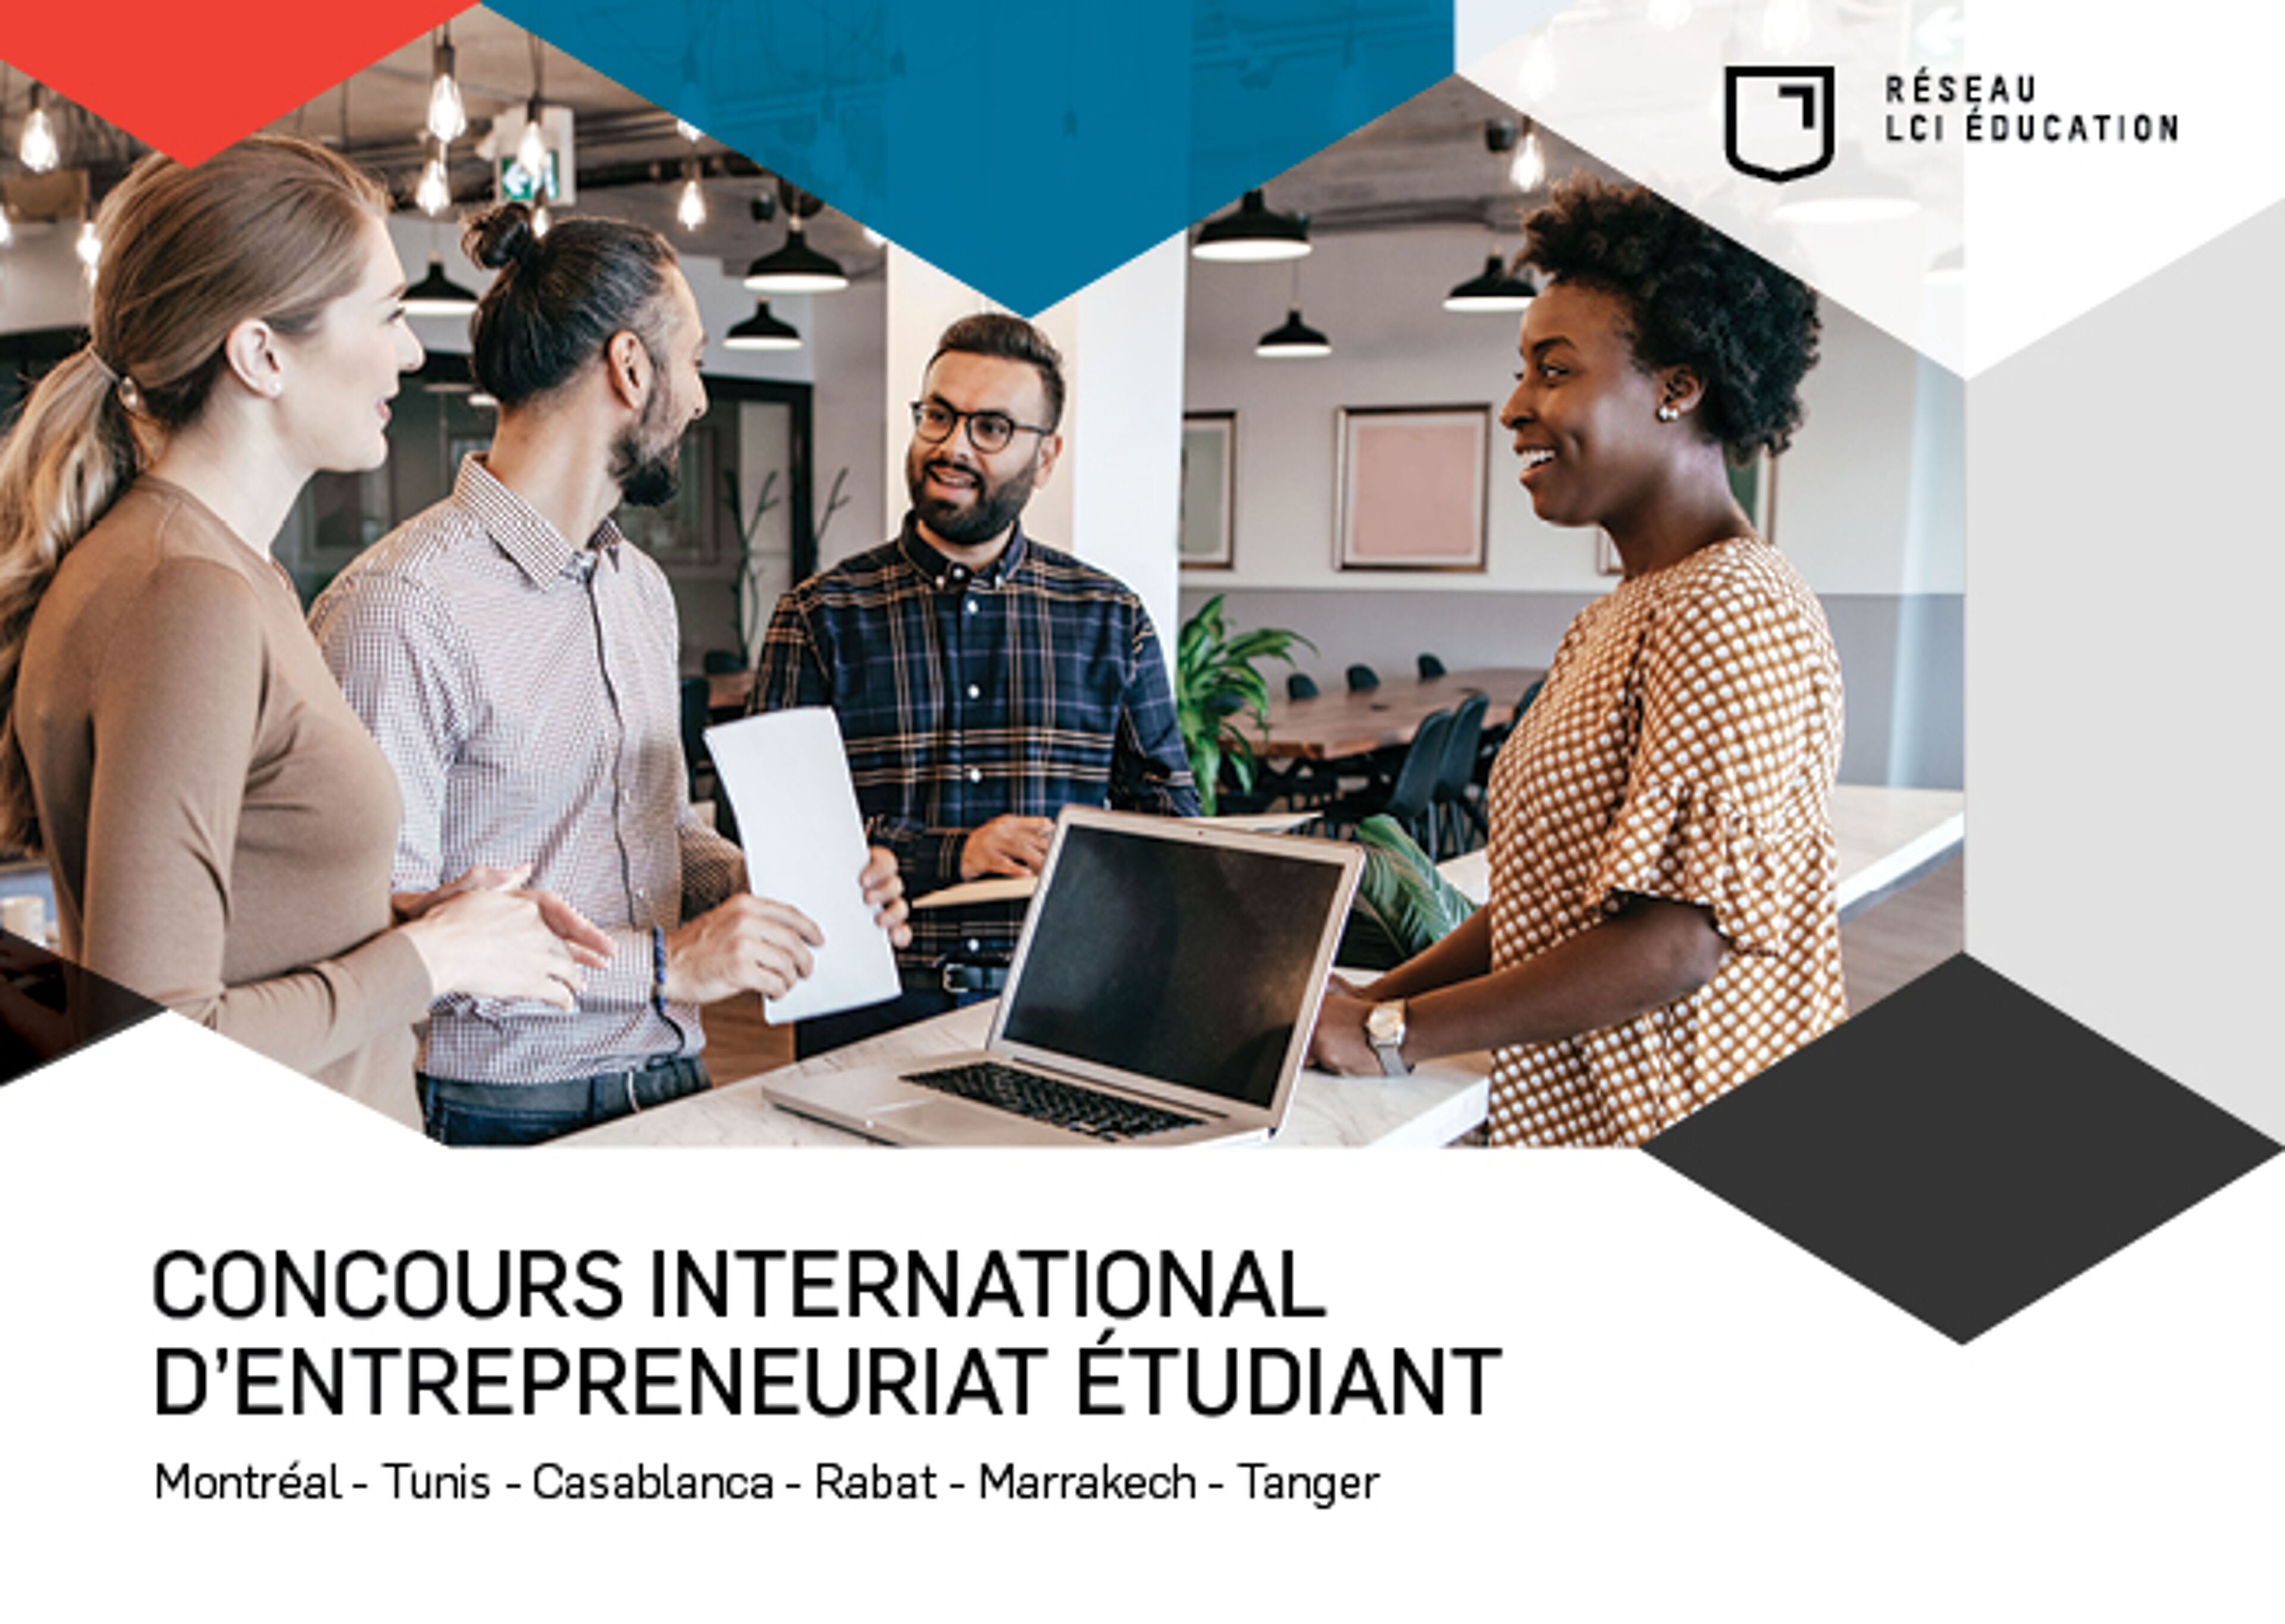 Un groupe d'étudiants diversifié collabore dans un bureau moderne, réfléchissant pour un concours mondial d'entrepreneuriat.